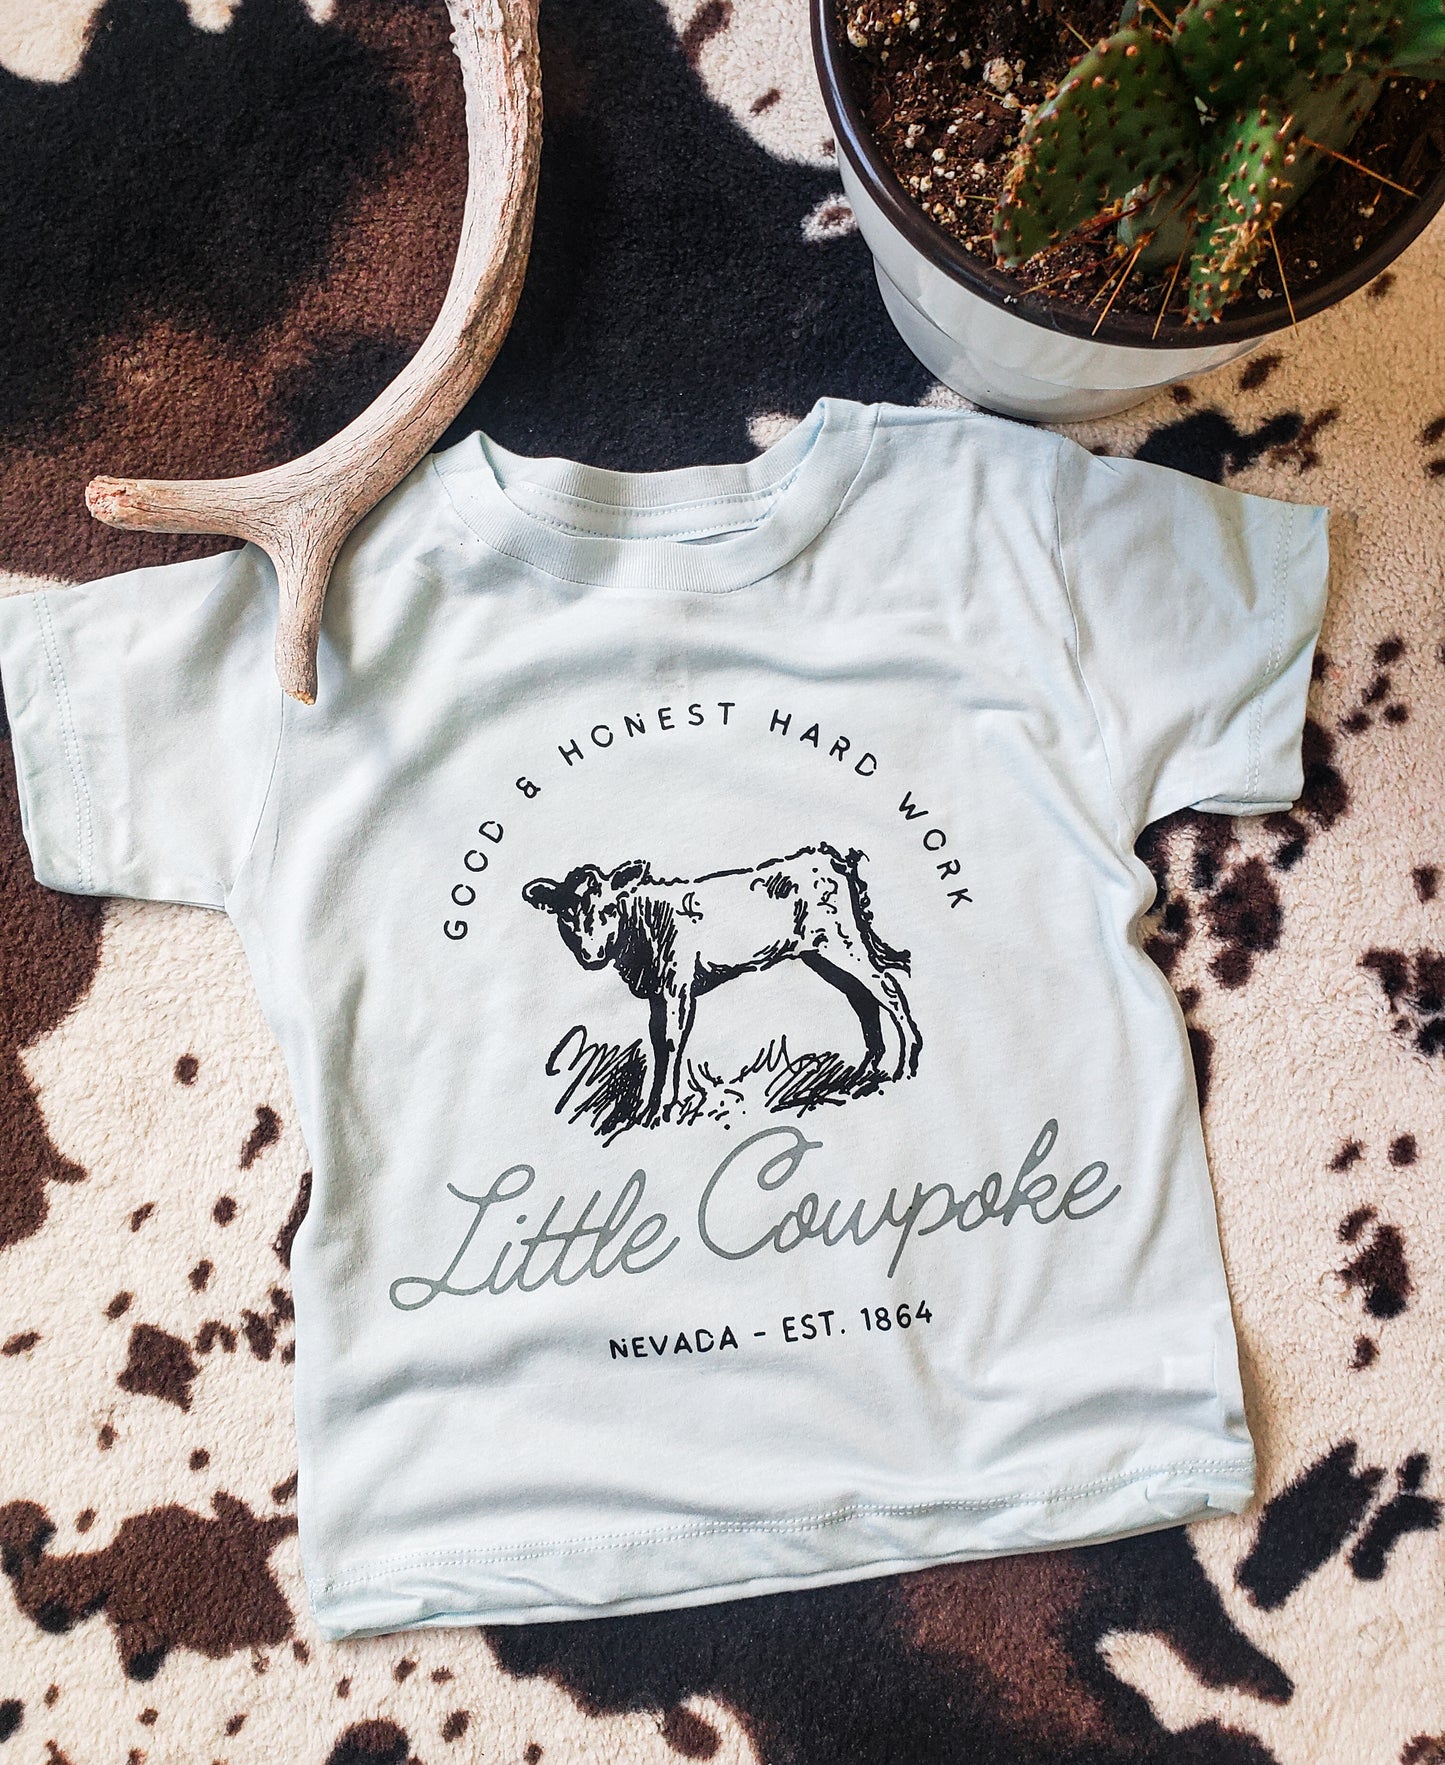 Little Cowpoke